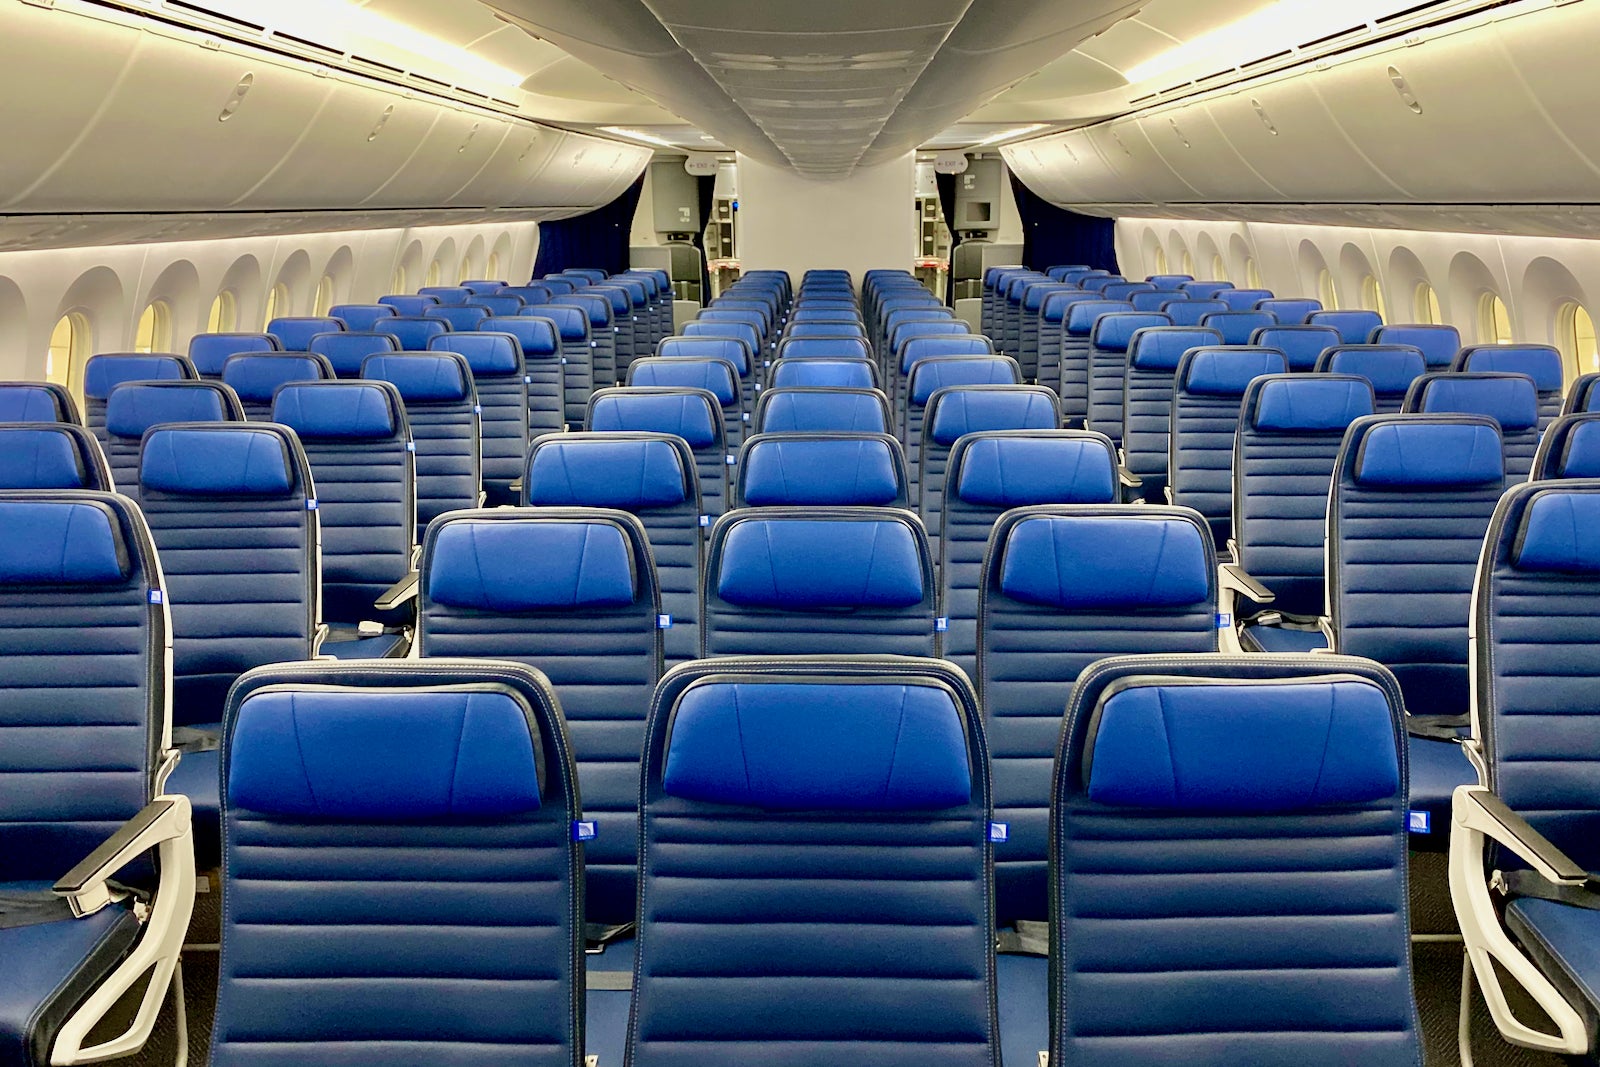 United Dreamliner economy cabin